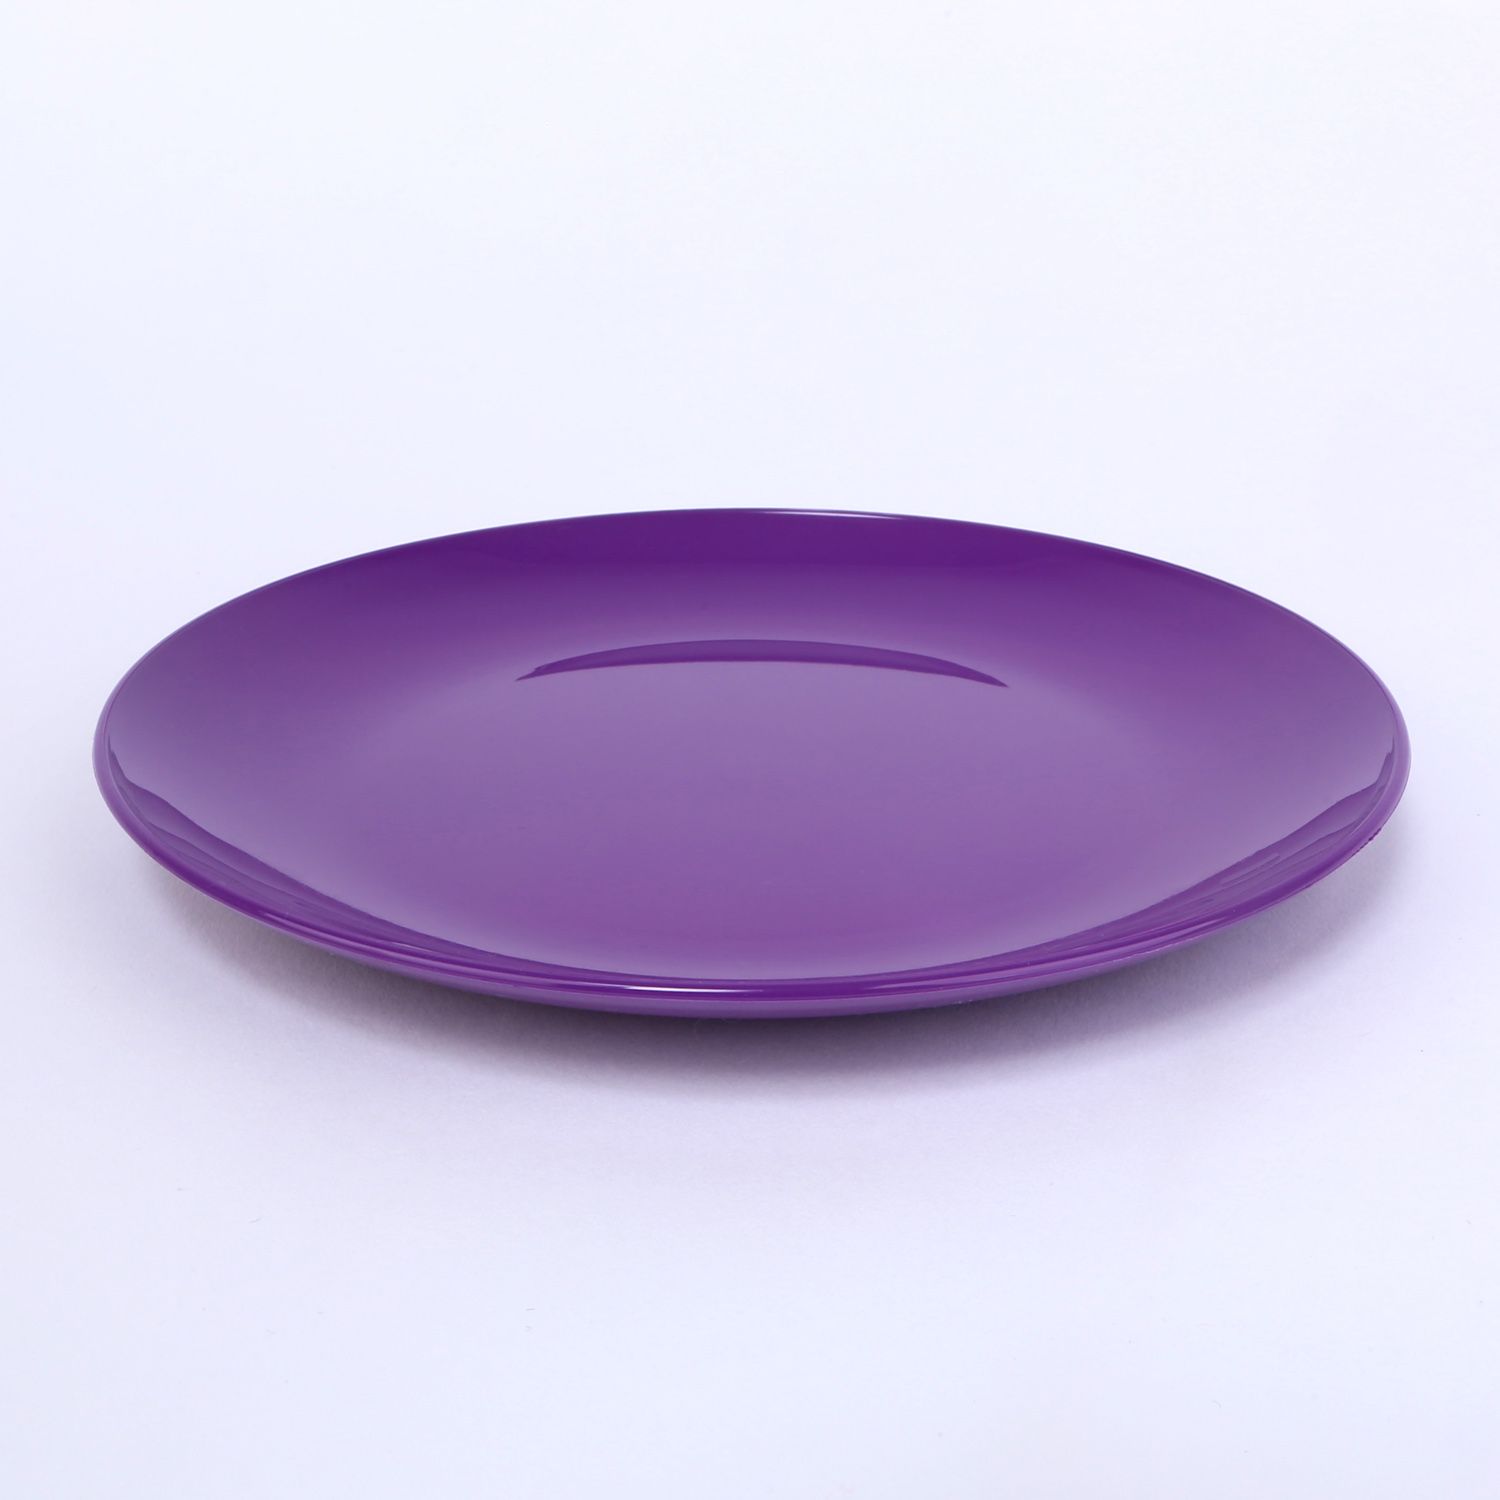 vaLon Zephyr Dessertteller 19 cm aus schadstofffreiem Kunststoff in der Farbe lila.